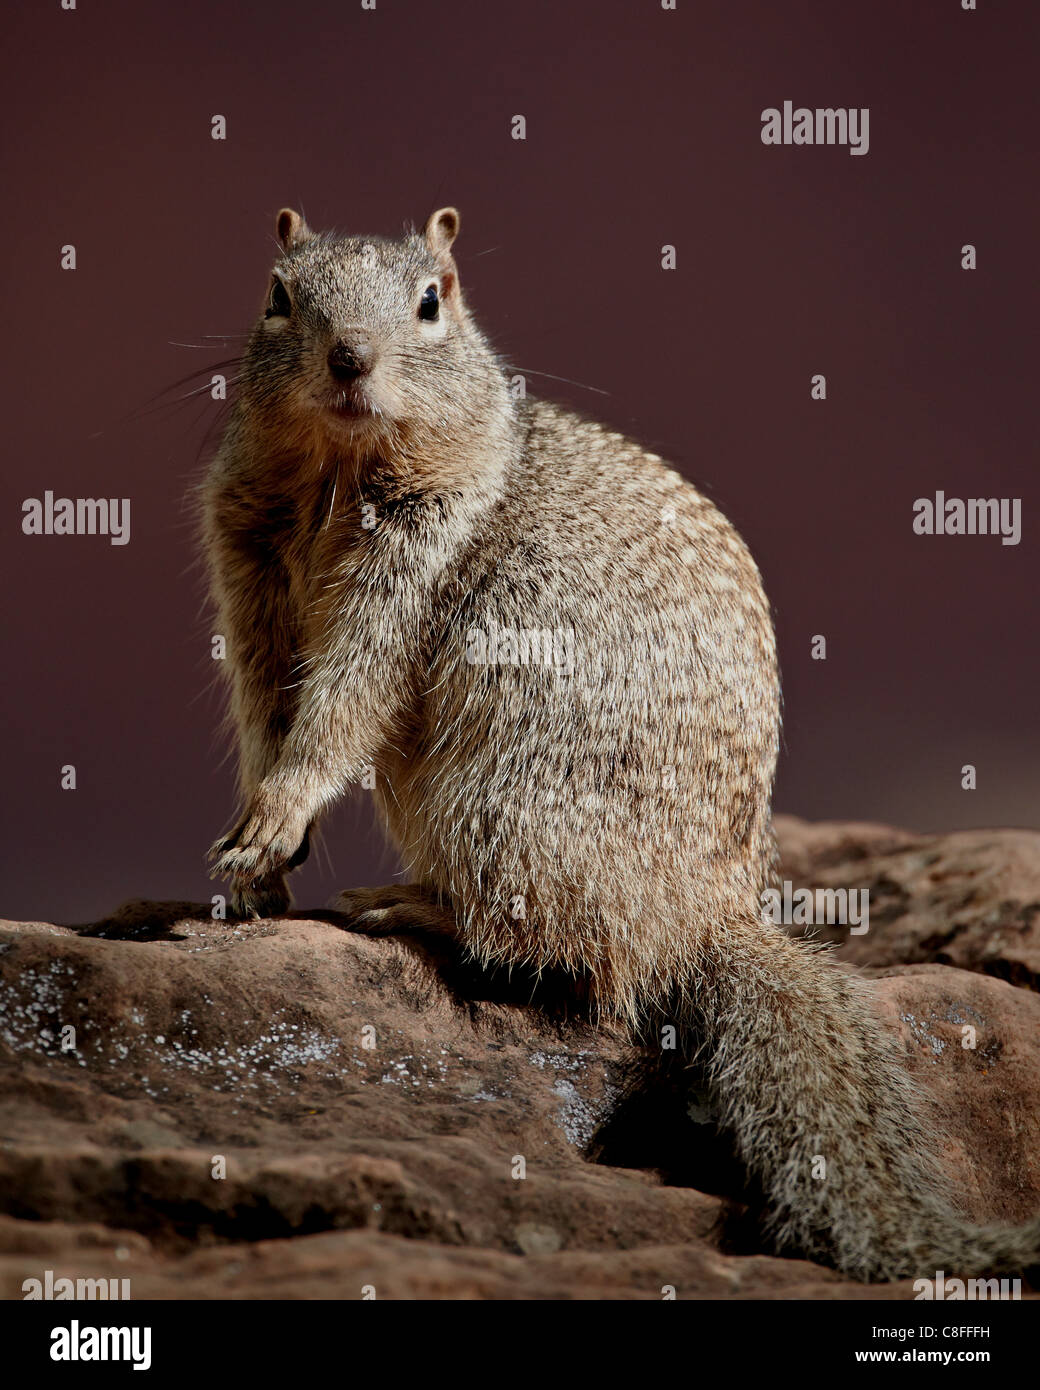 Rock Squirrel (Spermophilus variegatus, Zion National Park, Utah, United States of America Stock Photo